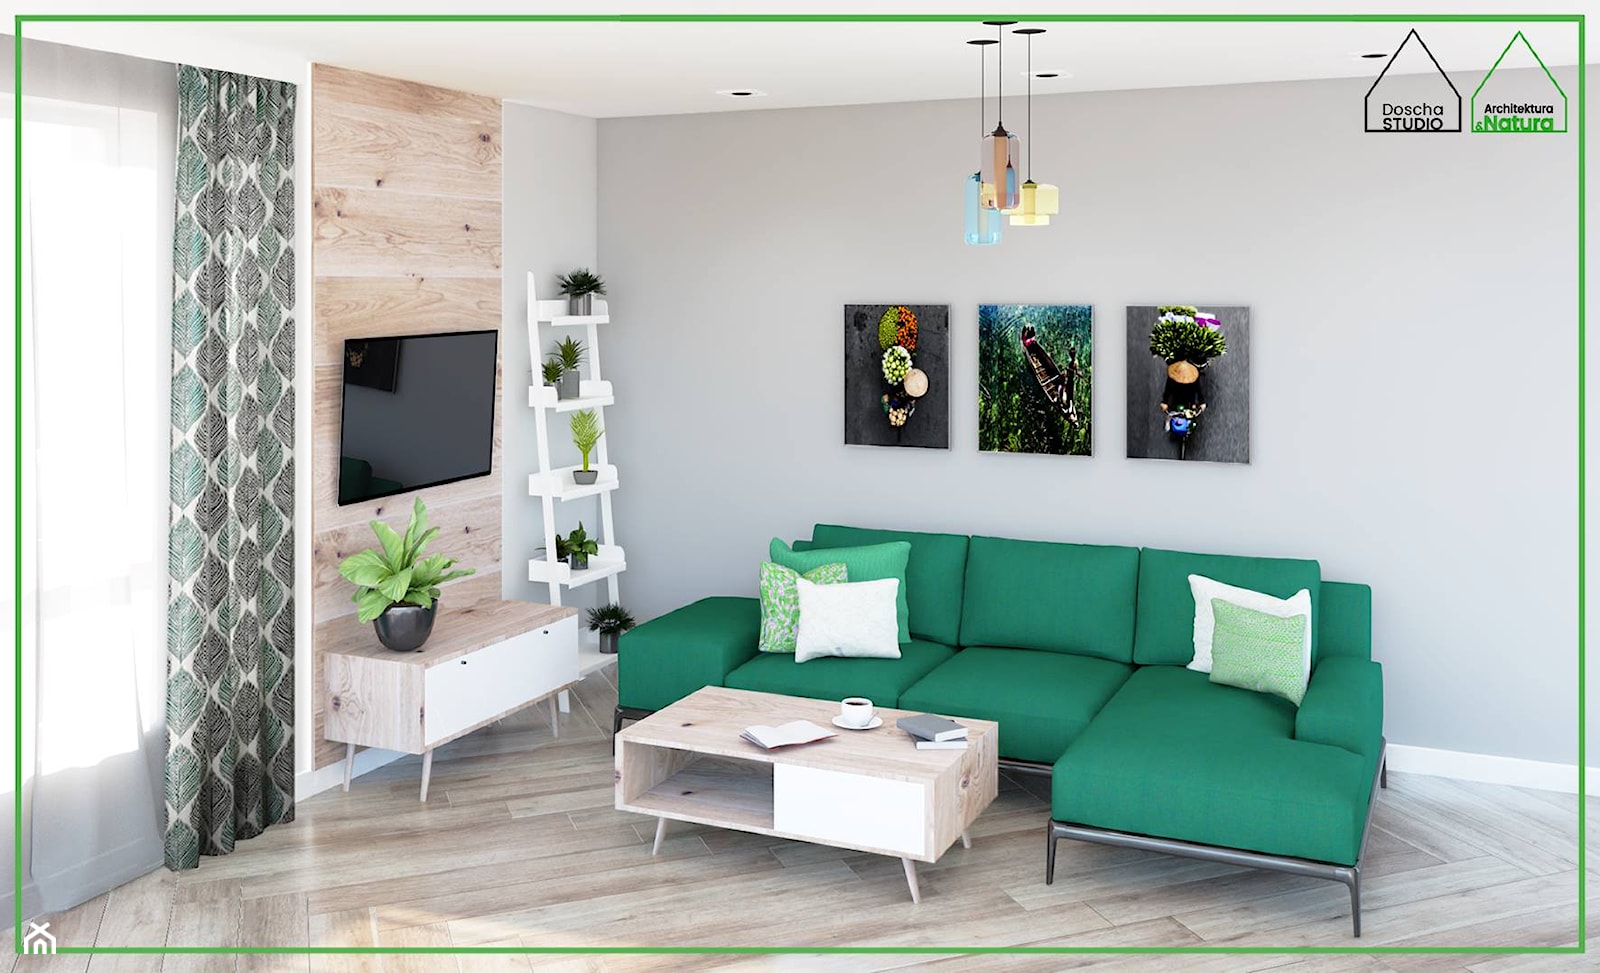 Salon z zieloną sofą dla pasjonatów roślin - zdjęcie od Doscha STUDIO Julia Chalimoniuk-Dombrowska Projektowanie Wnętrz Gdynia - Homebook